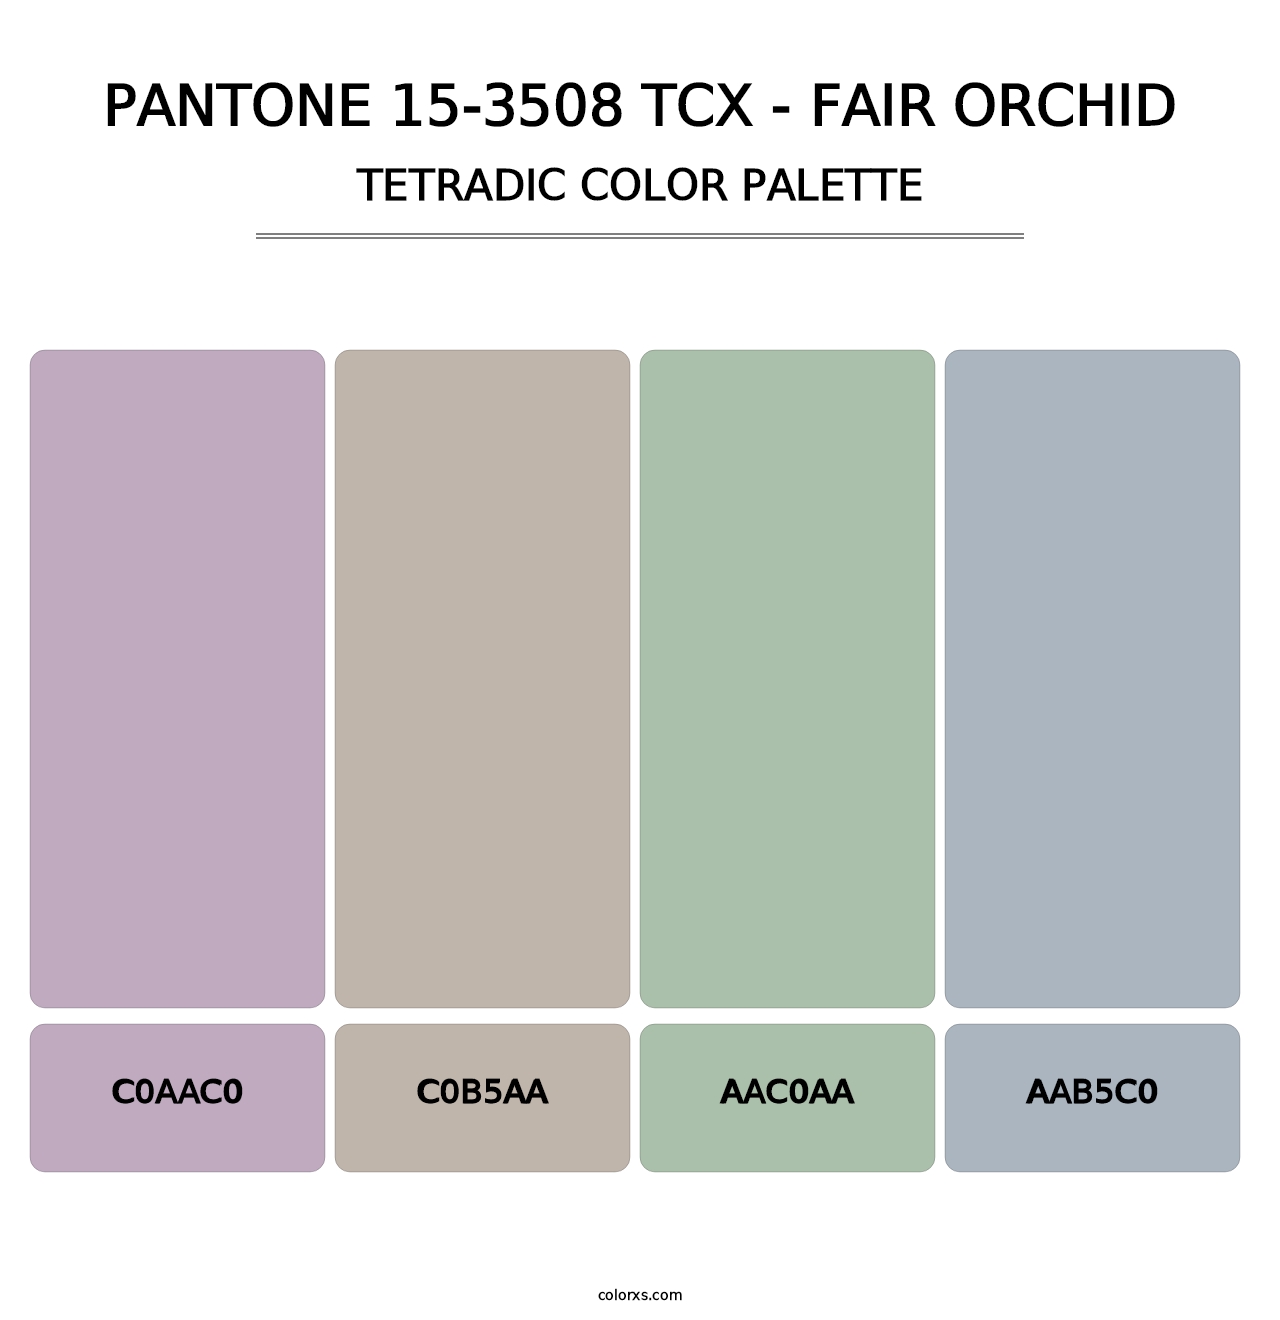 PANTONE 15-3508 TCX - Fair Orchid - Tetradic Color Palette